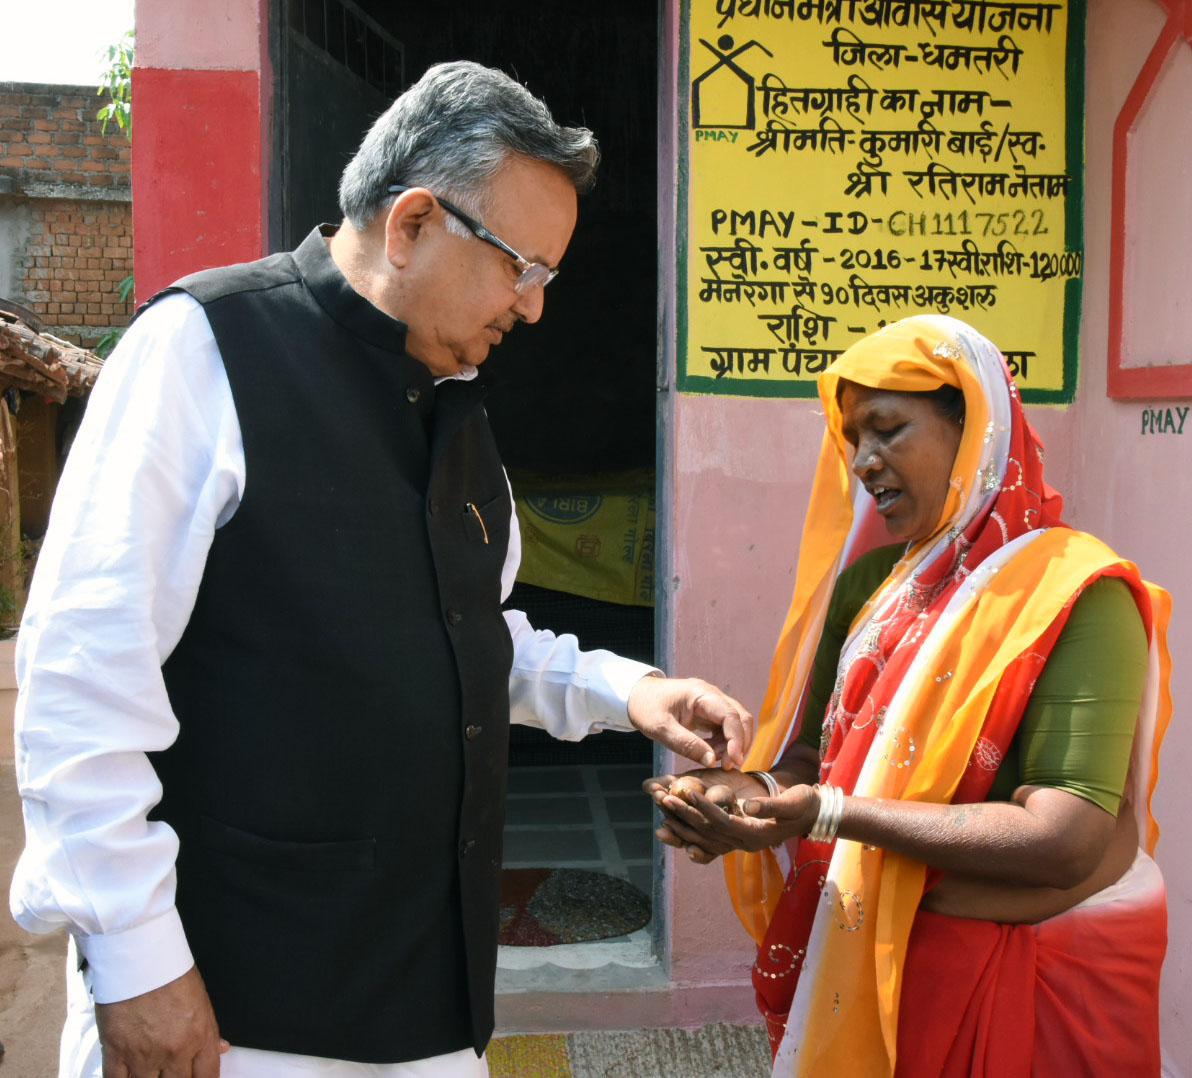 कुमारी बाई ने मीठे तेंदूफलों से किया मुख्यमंत्री का आत्मीय स्वागत : डॉ. सिंह ने शौक से खाया तेंदूफल